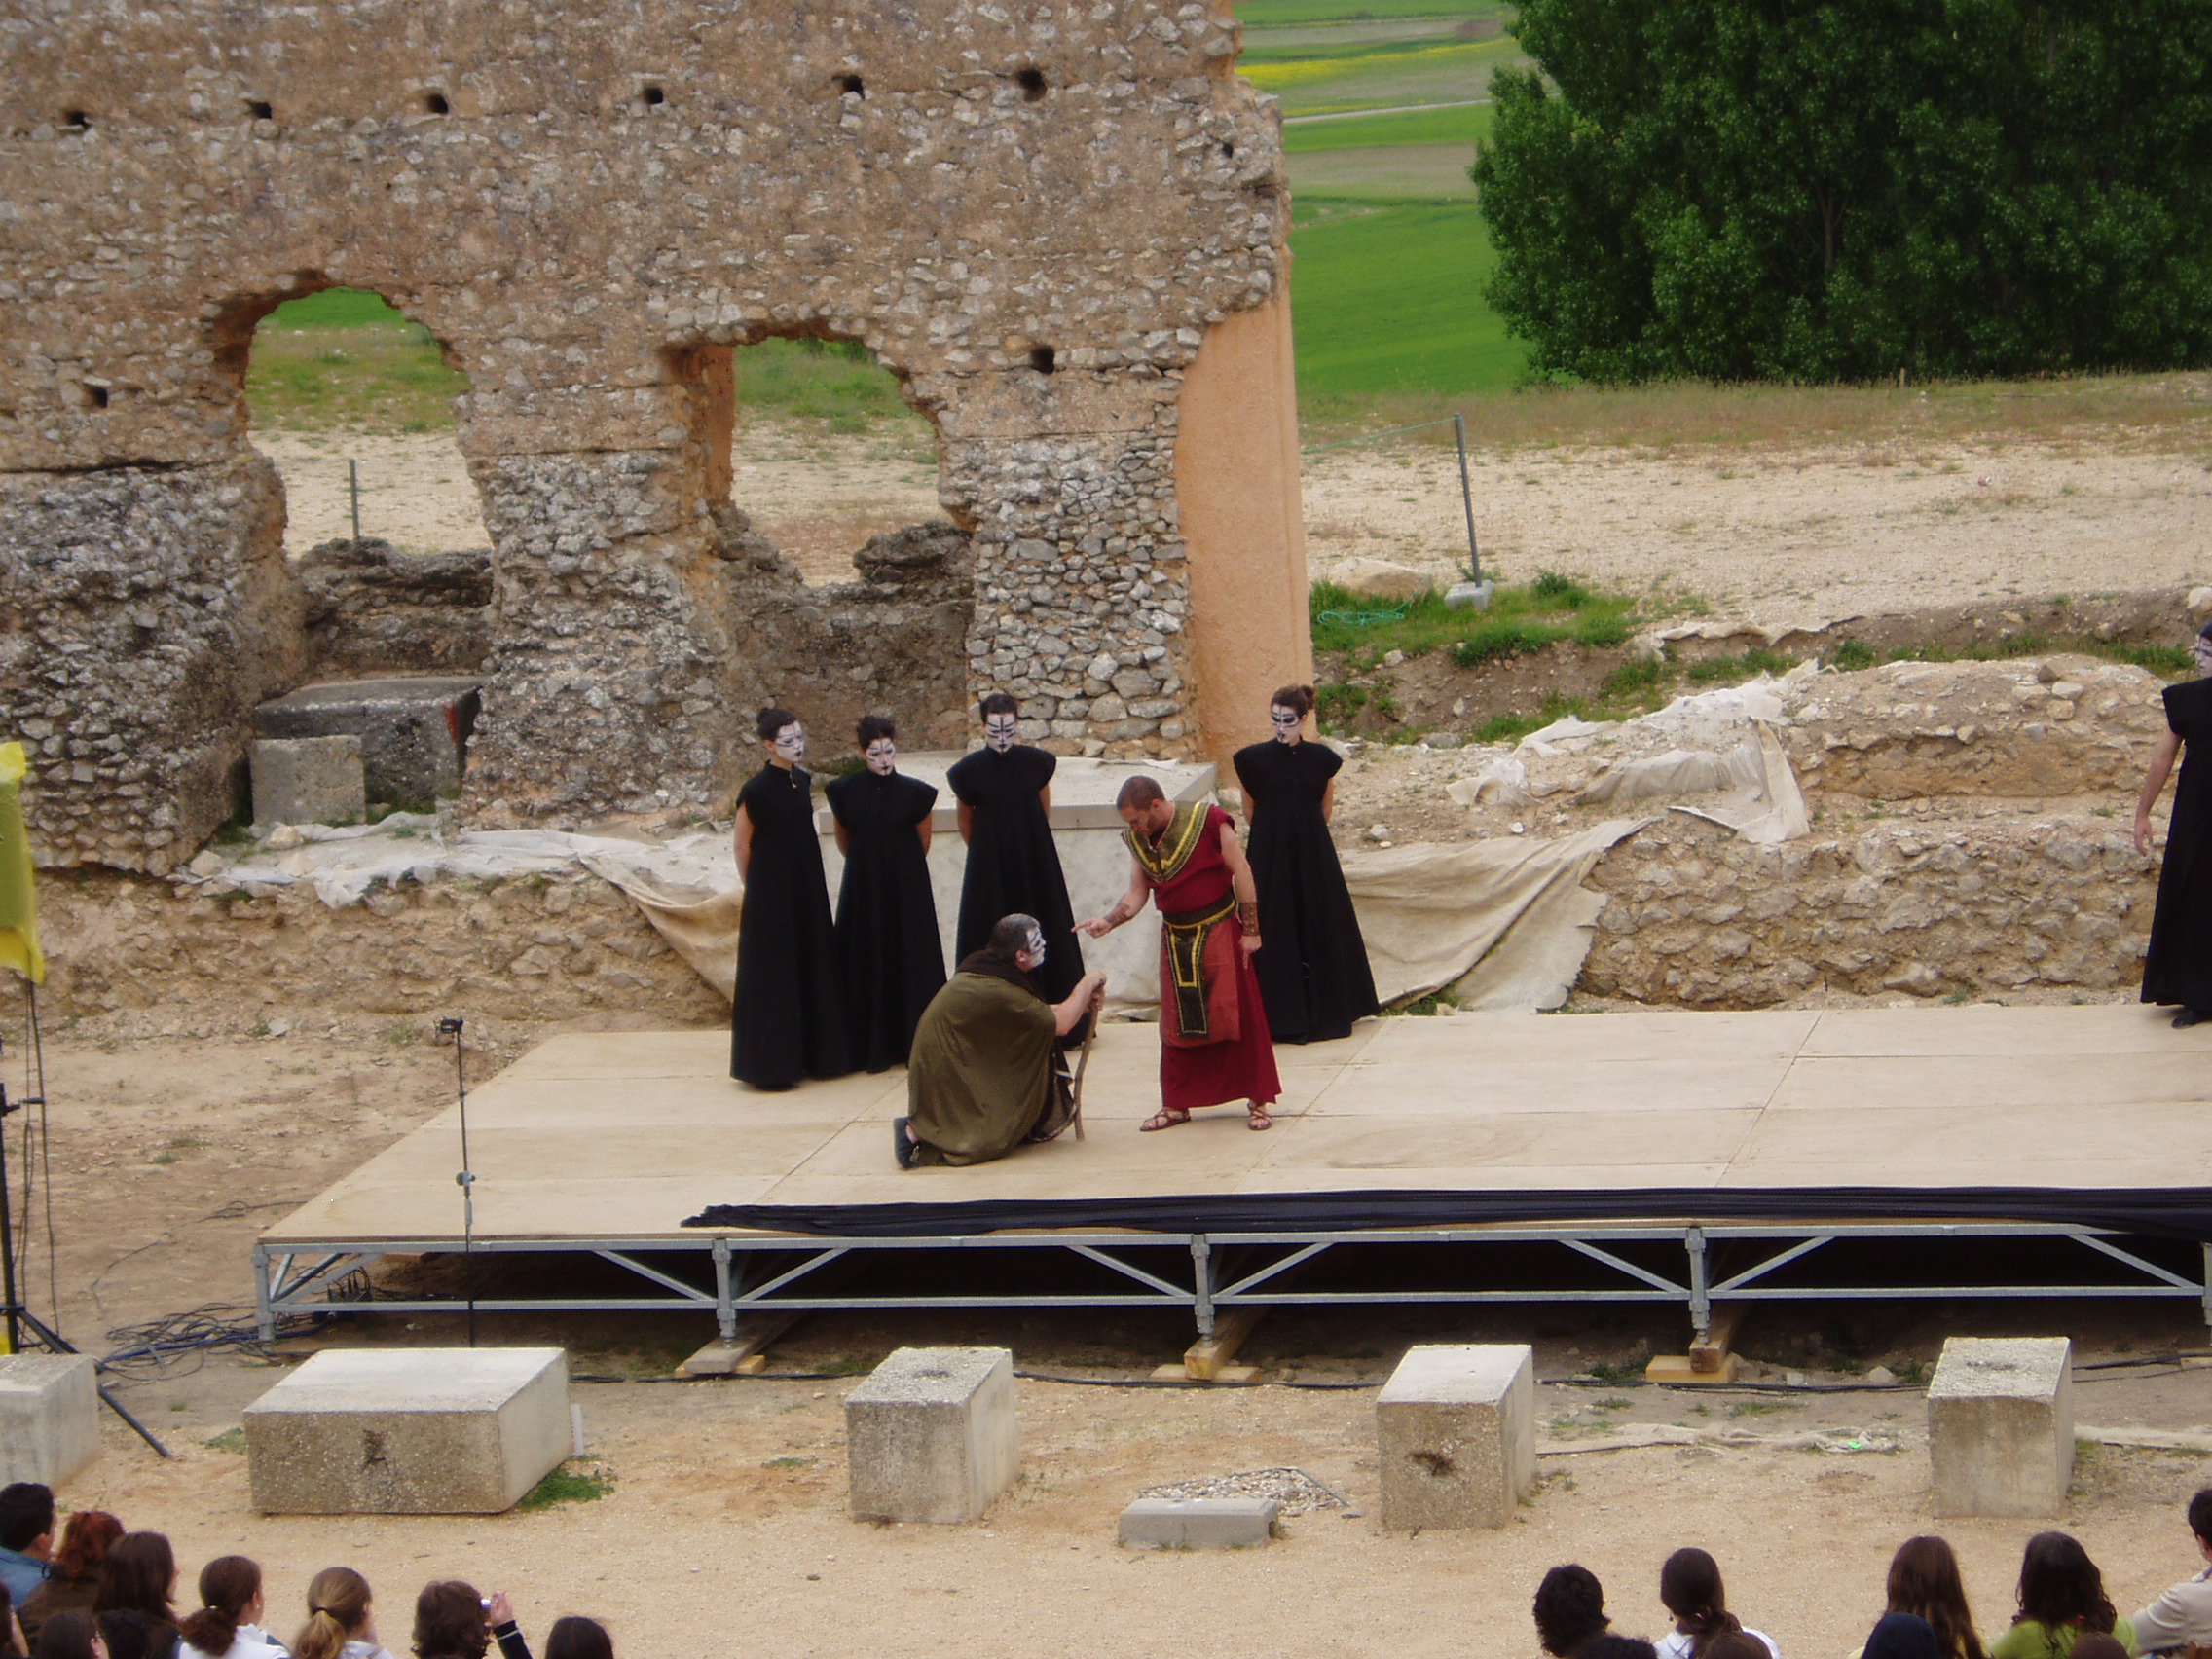 Escena teatral donde aparece un escenario exterior con poca altura. En él aparecen 6 personas, cuatro de ellas vestidas con traje negro y la cara pintada de negro. Se puede apreciar a los espectadores.